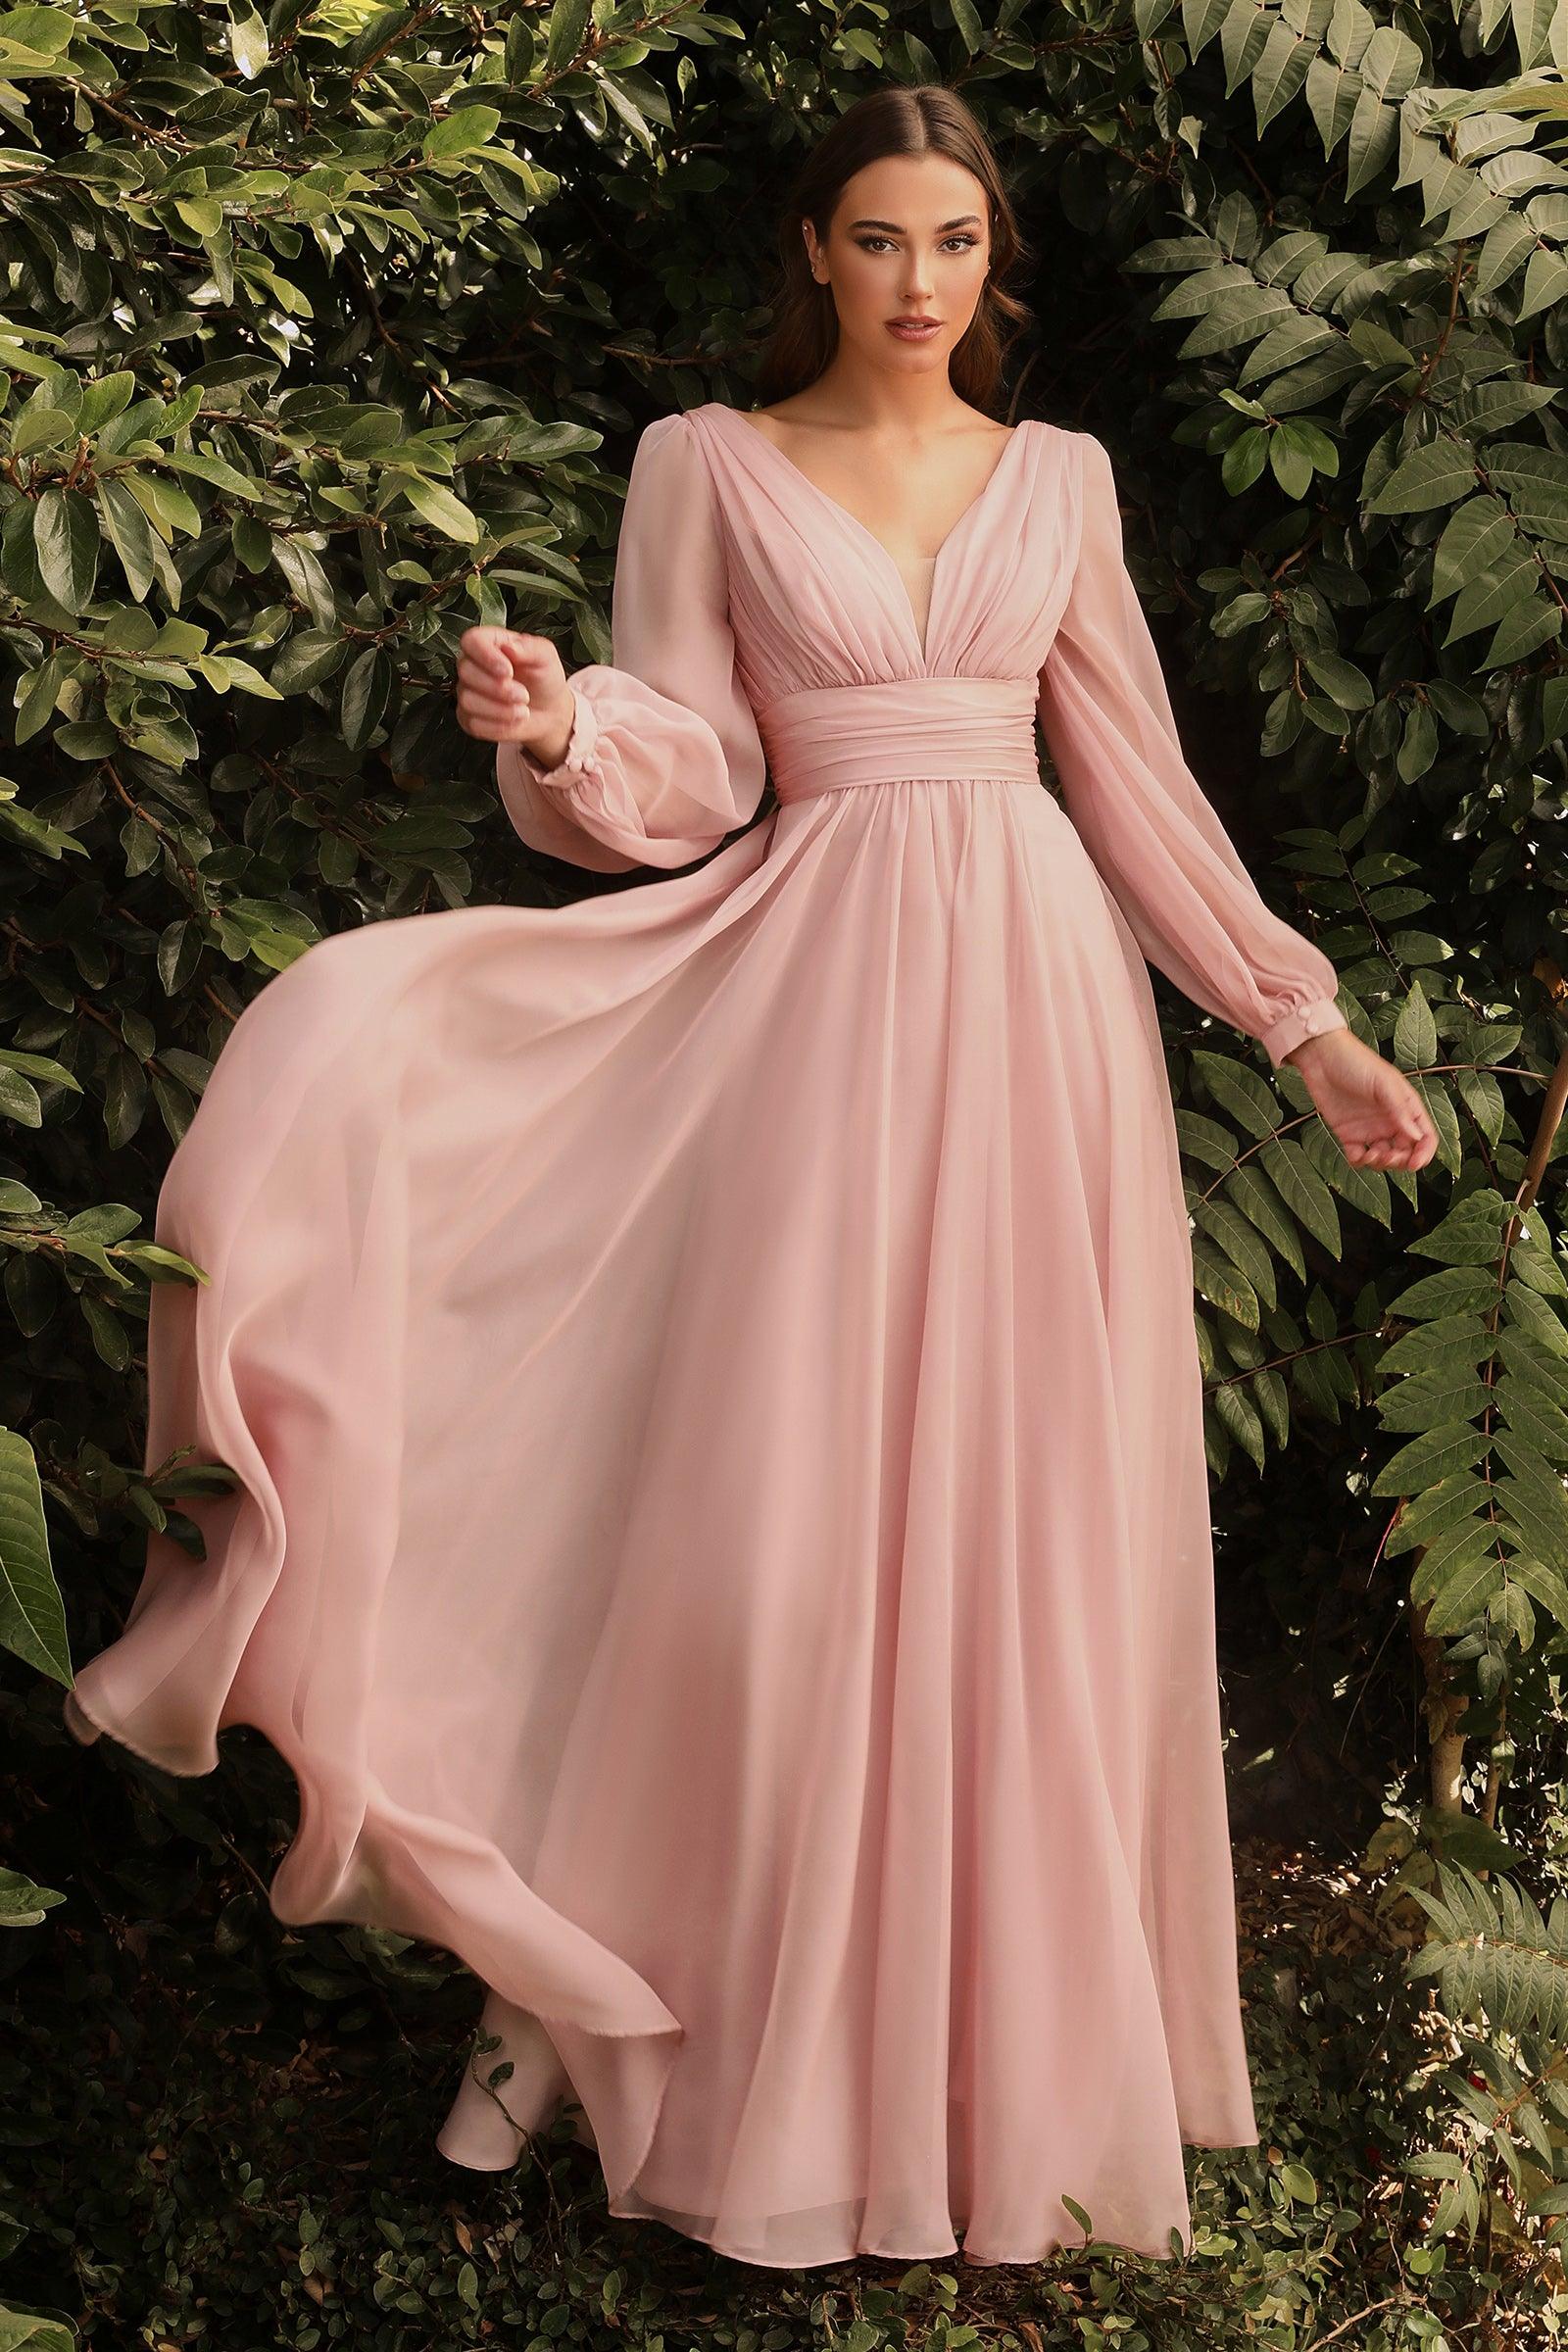 Pinterest Formal Dresses 2019 Factory Sale, 58% OFF | mooving.com.uy